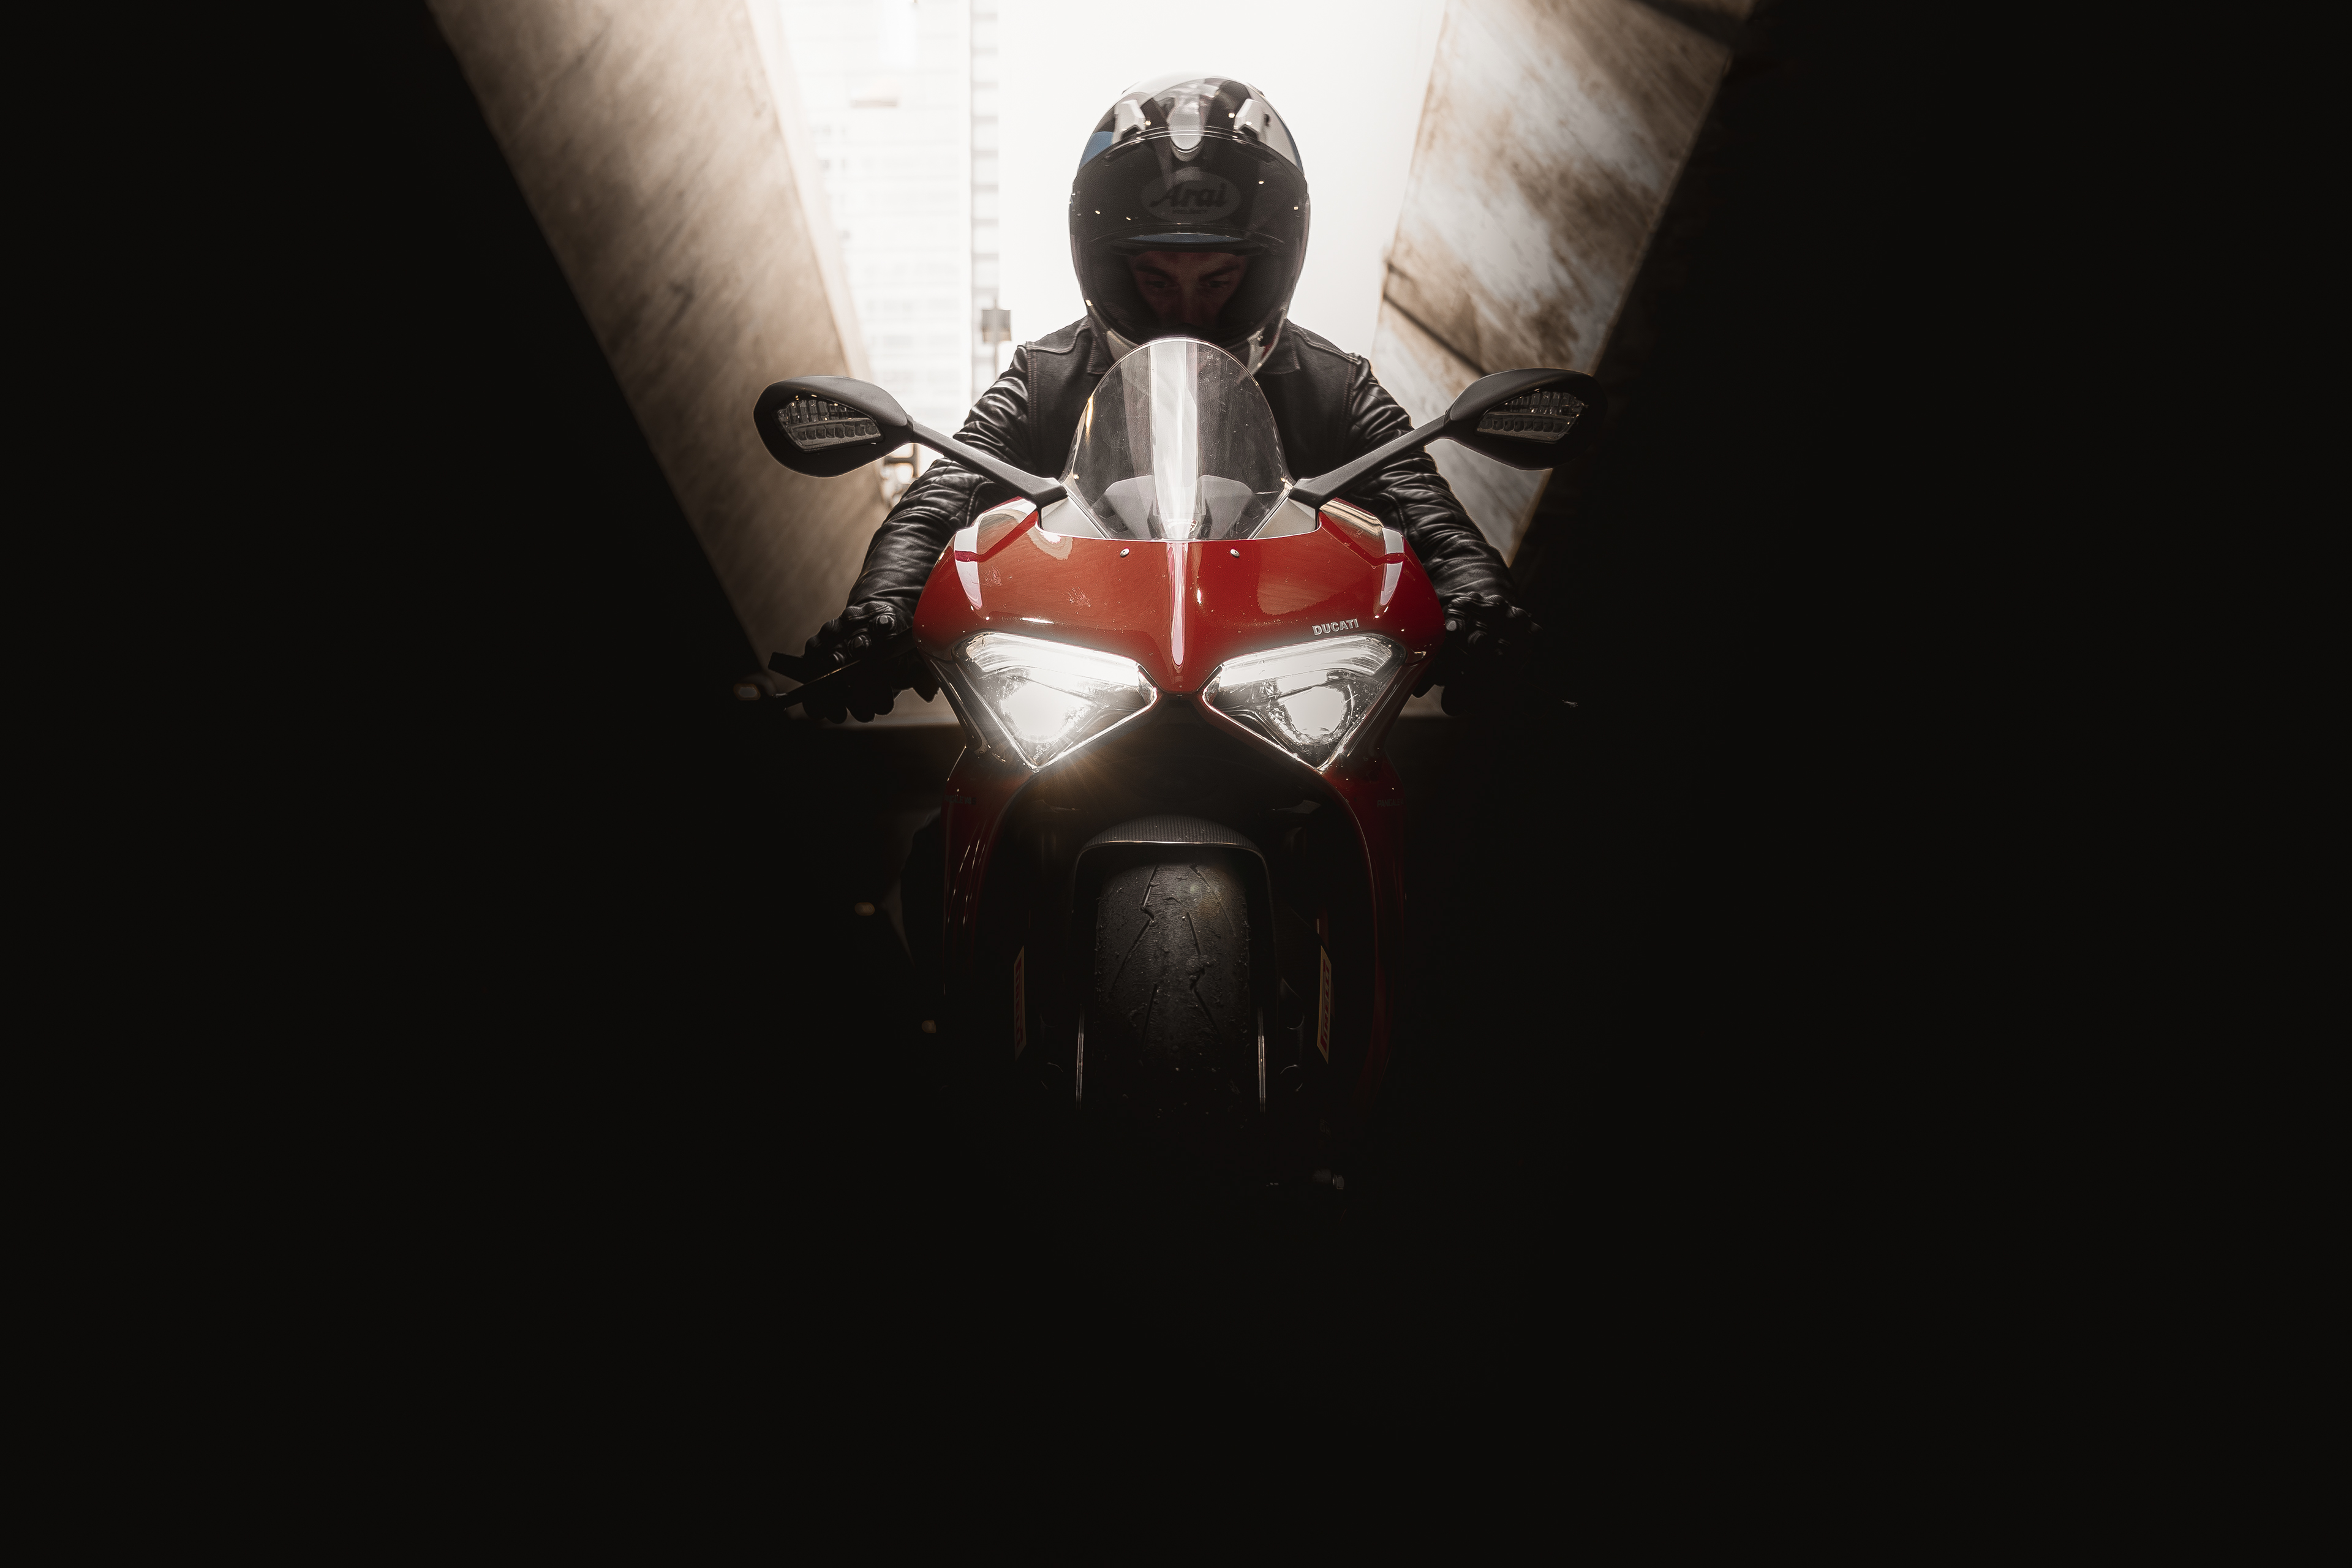 ducati 4k rider 1644786885 - Ducati 4k Rider - Ducati Rider wallpapers, Ducati 4k Rider wallpapers